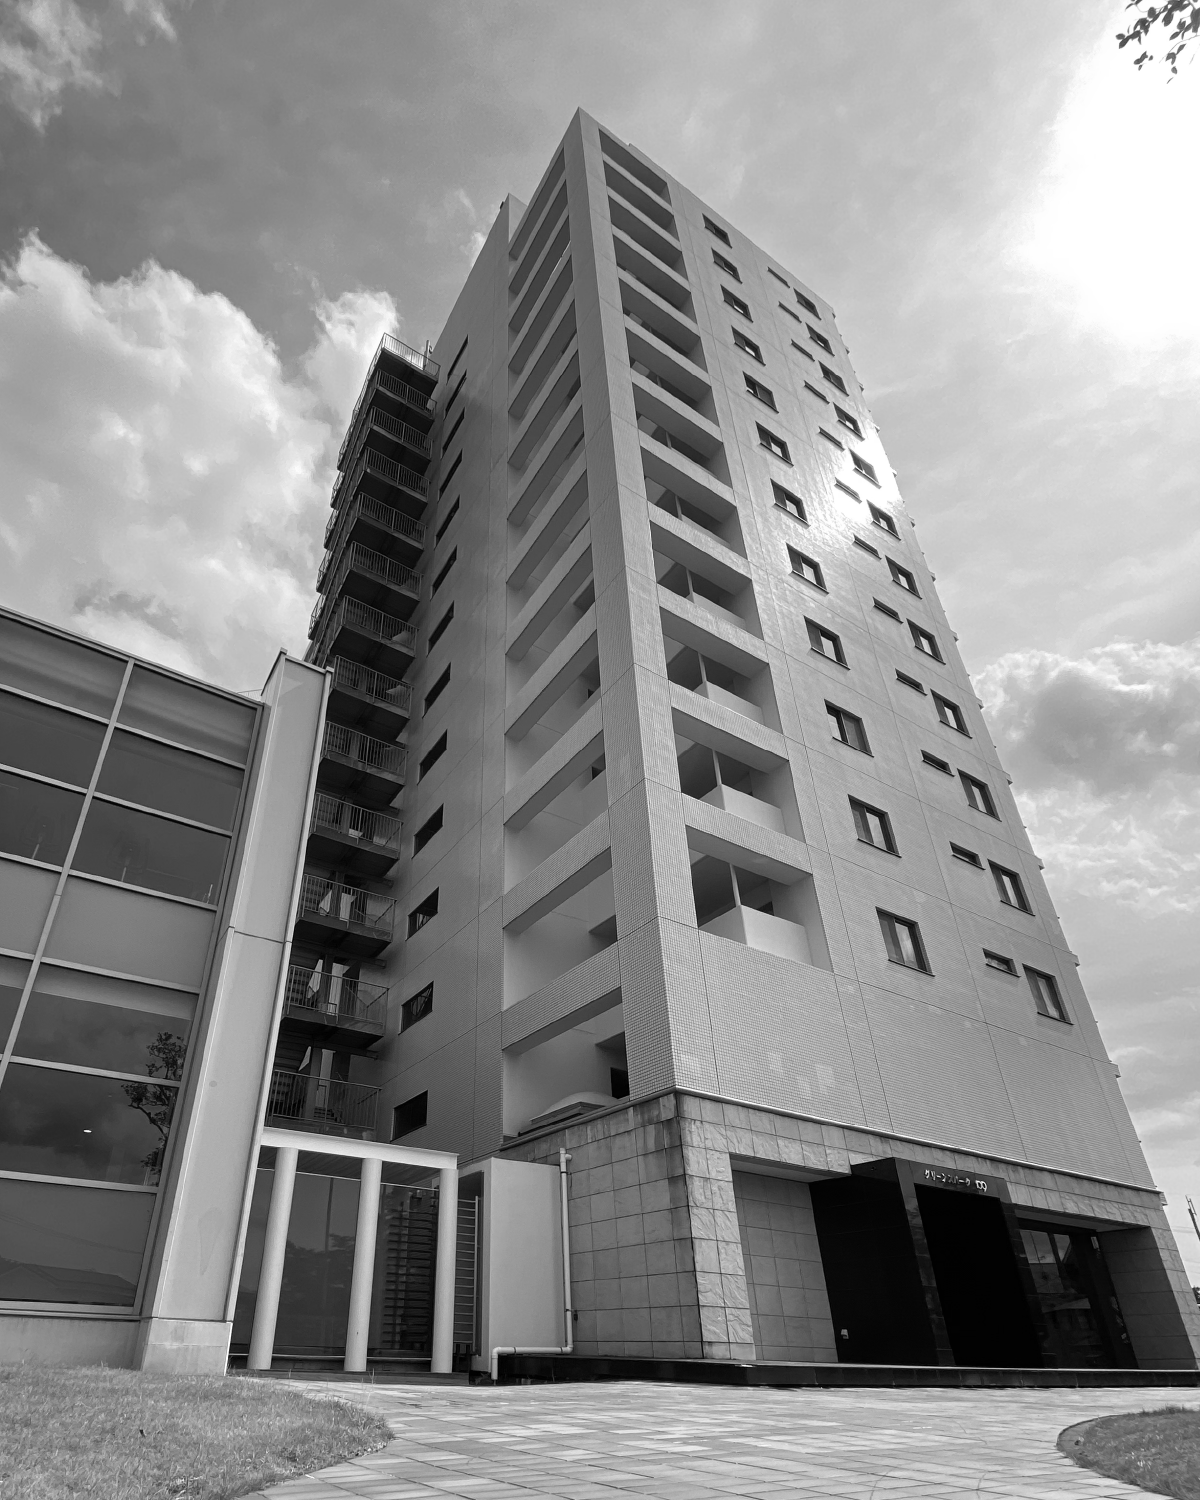 14階建ハイグレード賃貸マンショングリーンスパーク109のメインビジュアル